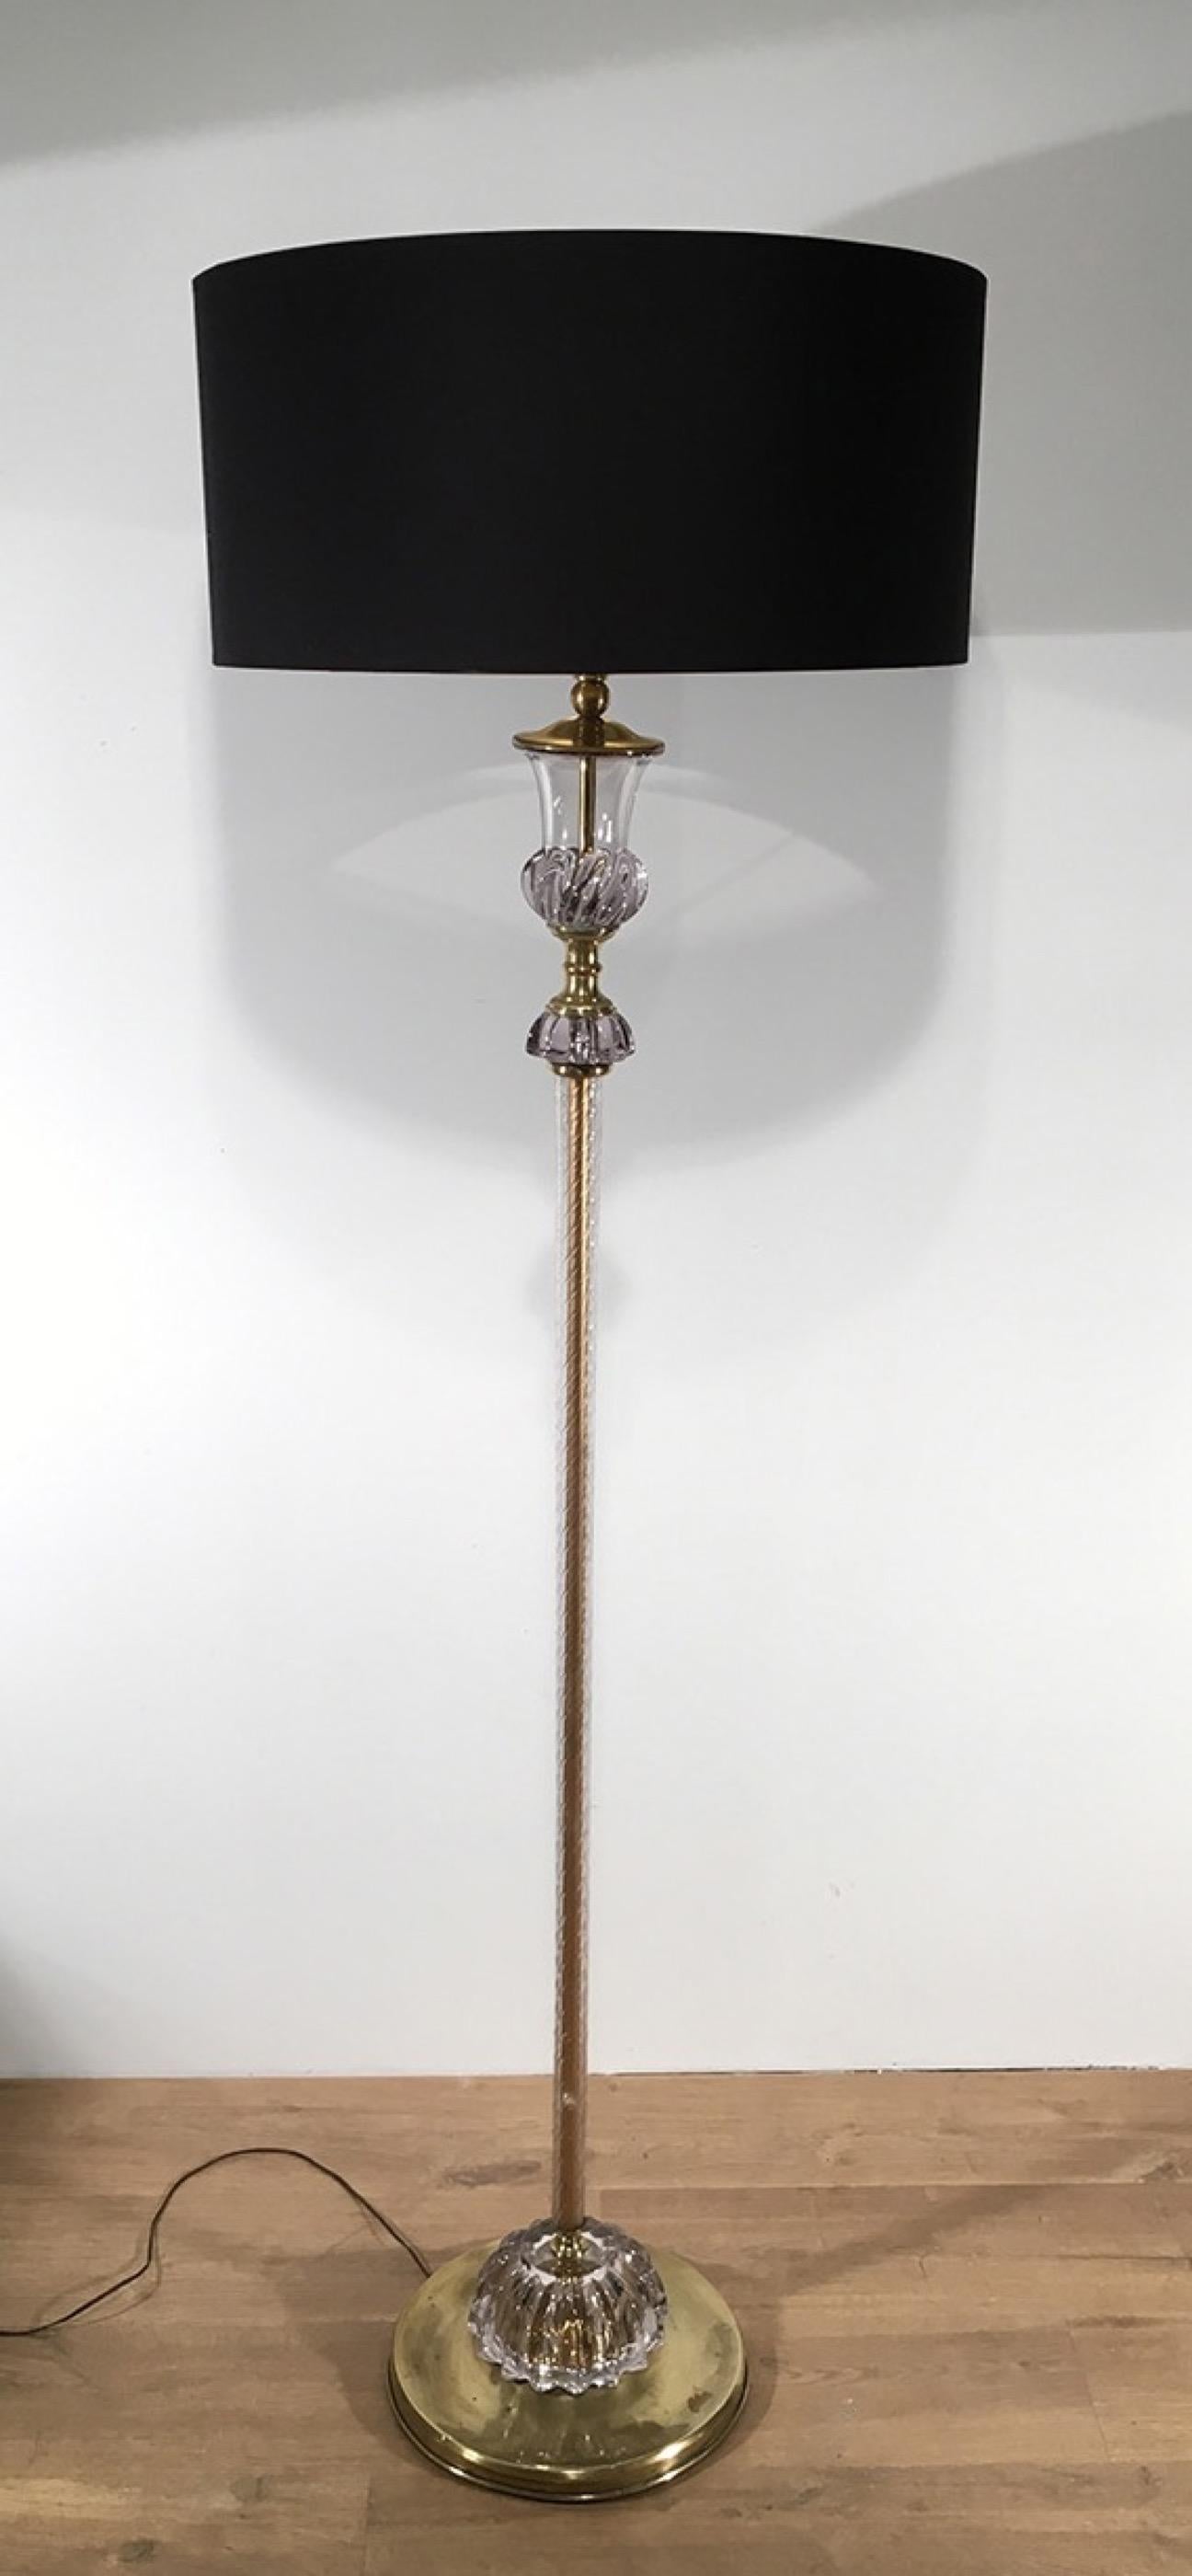 Ce très beau lampadaire de Murano est fabriqué en verre. Il s'agit d'un beau modèle attribué à Barovier & Toso, Murano, Italie, vers 1940.
 